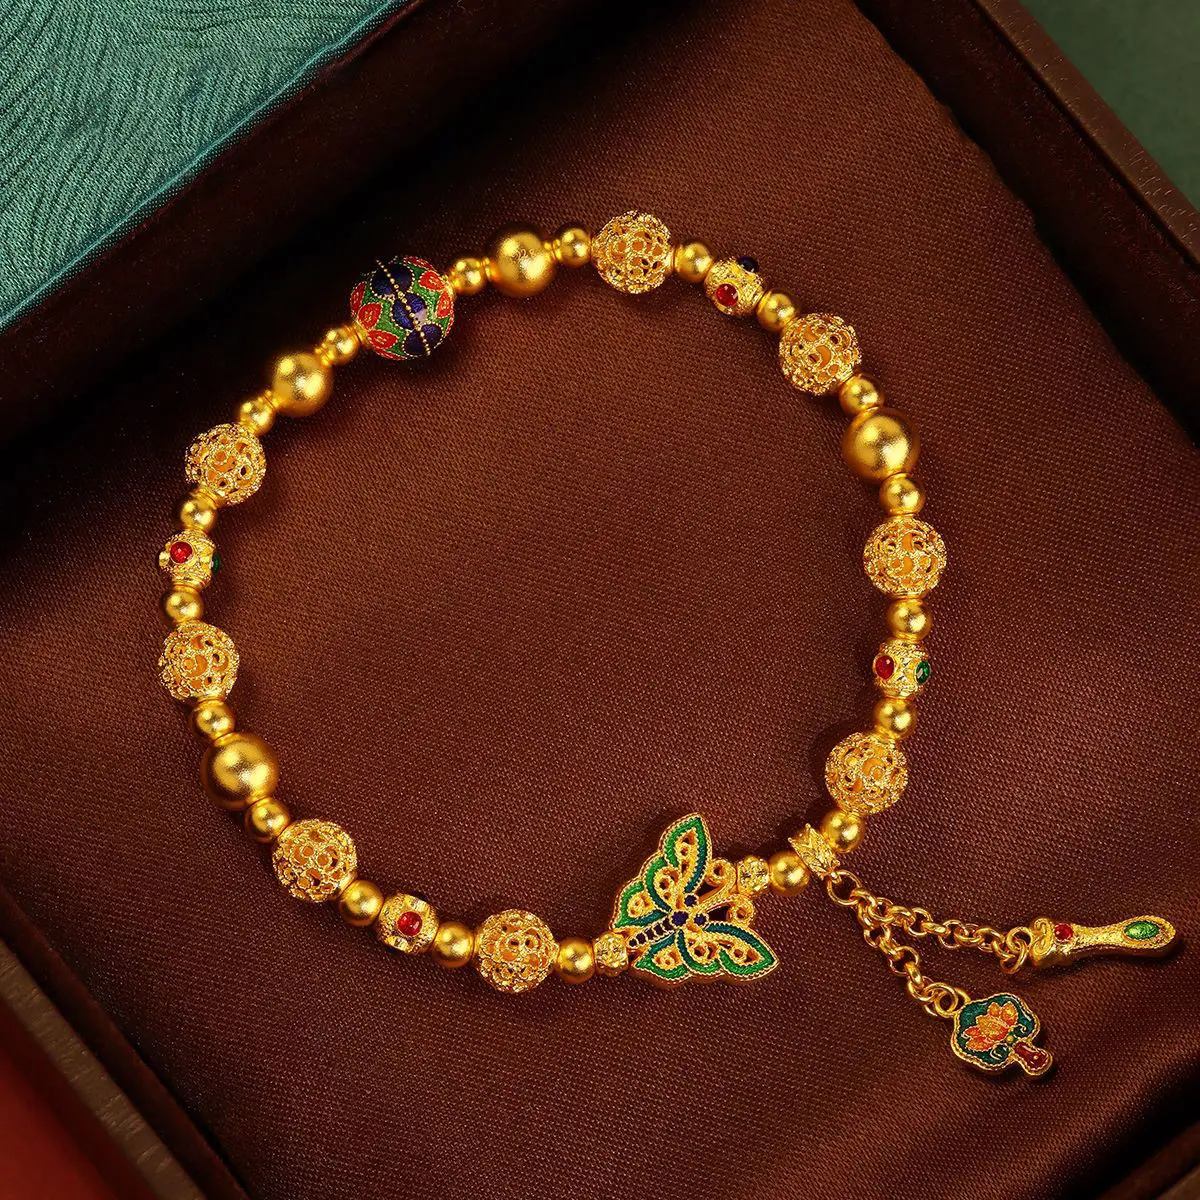 

Light Luxury Golden Burned Blue Butterfly Pendant Tassel Bracelet Elegant All-match National Fashion Gift for Girlfriend